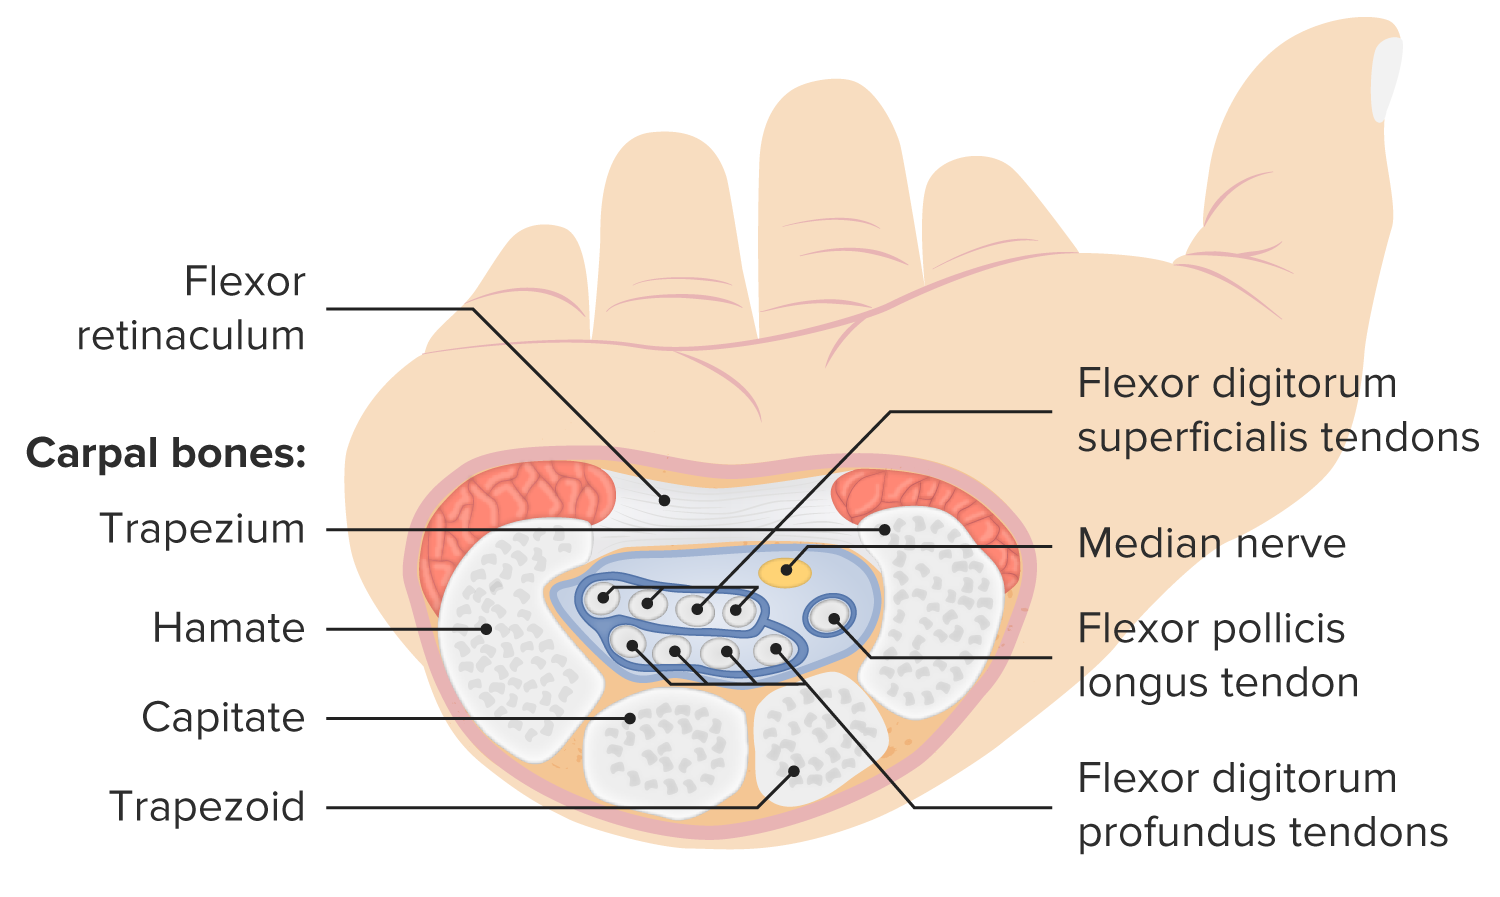 Anatomía del túnel carpiano - Mayo Clinic